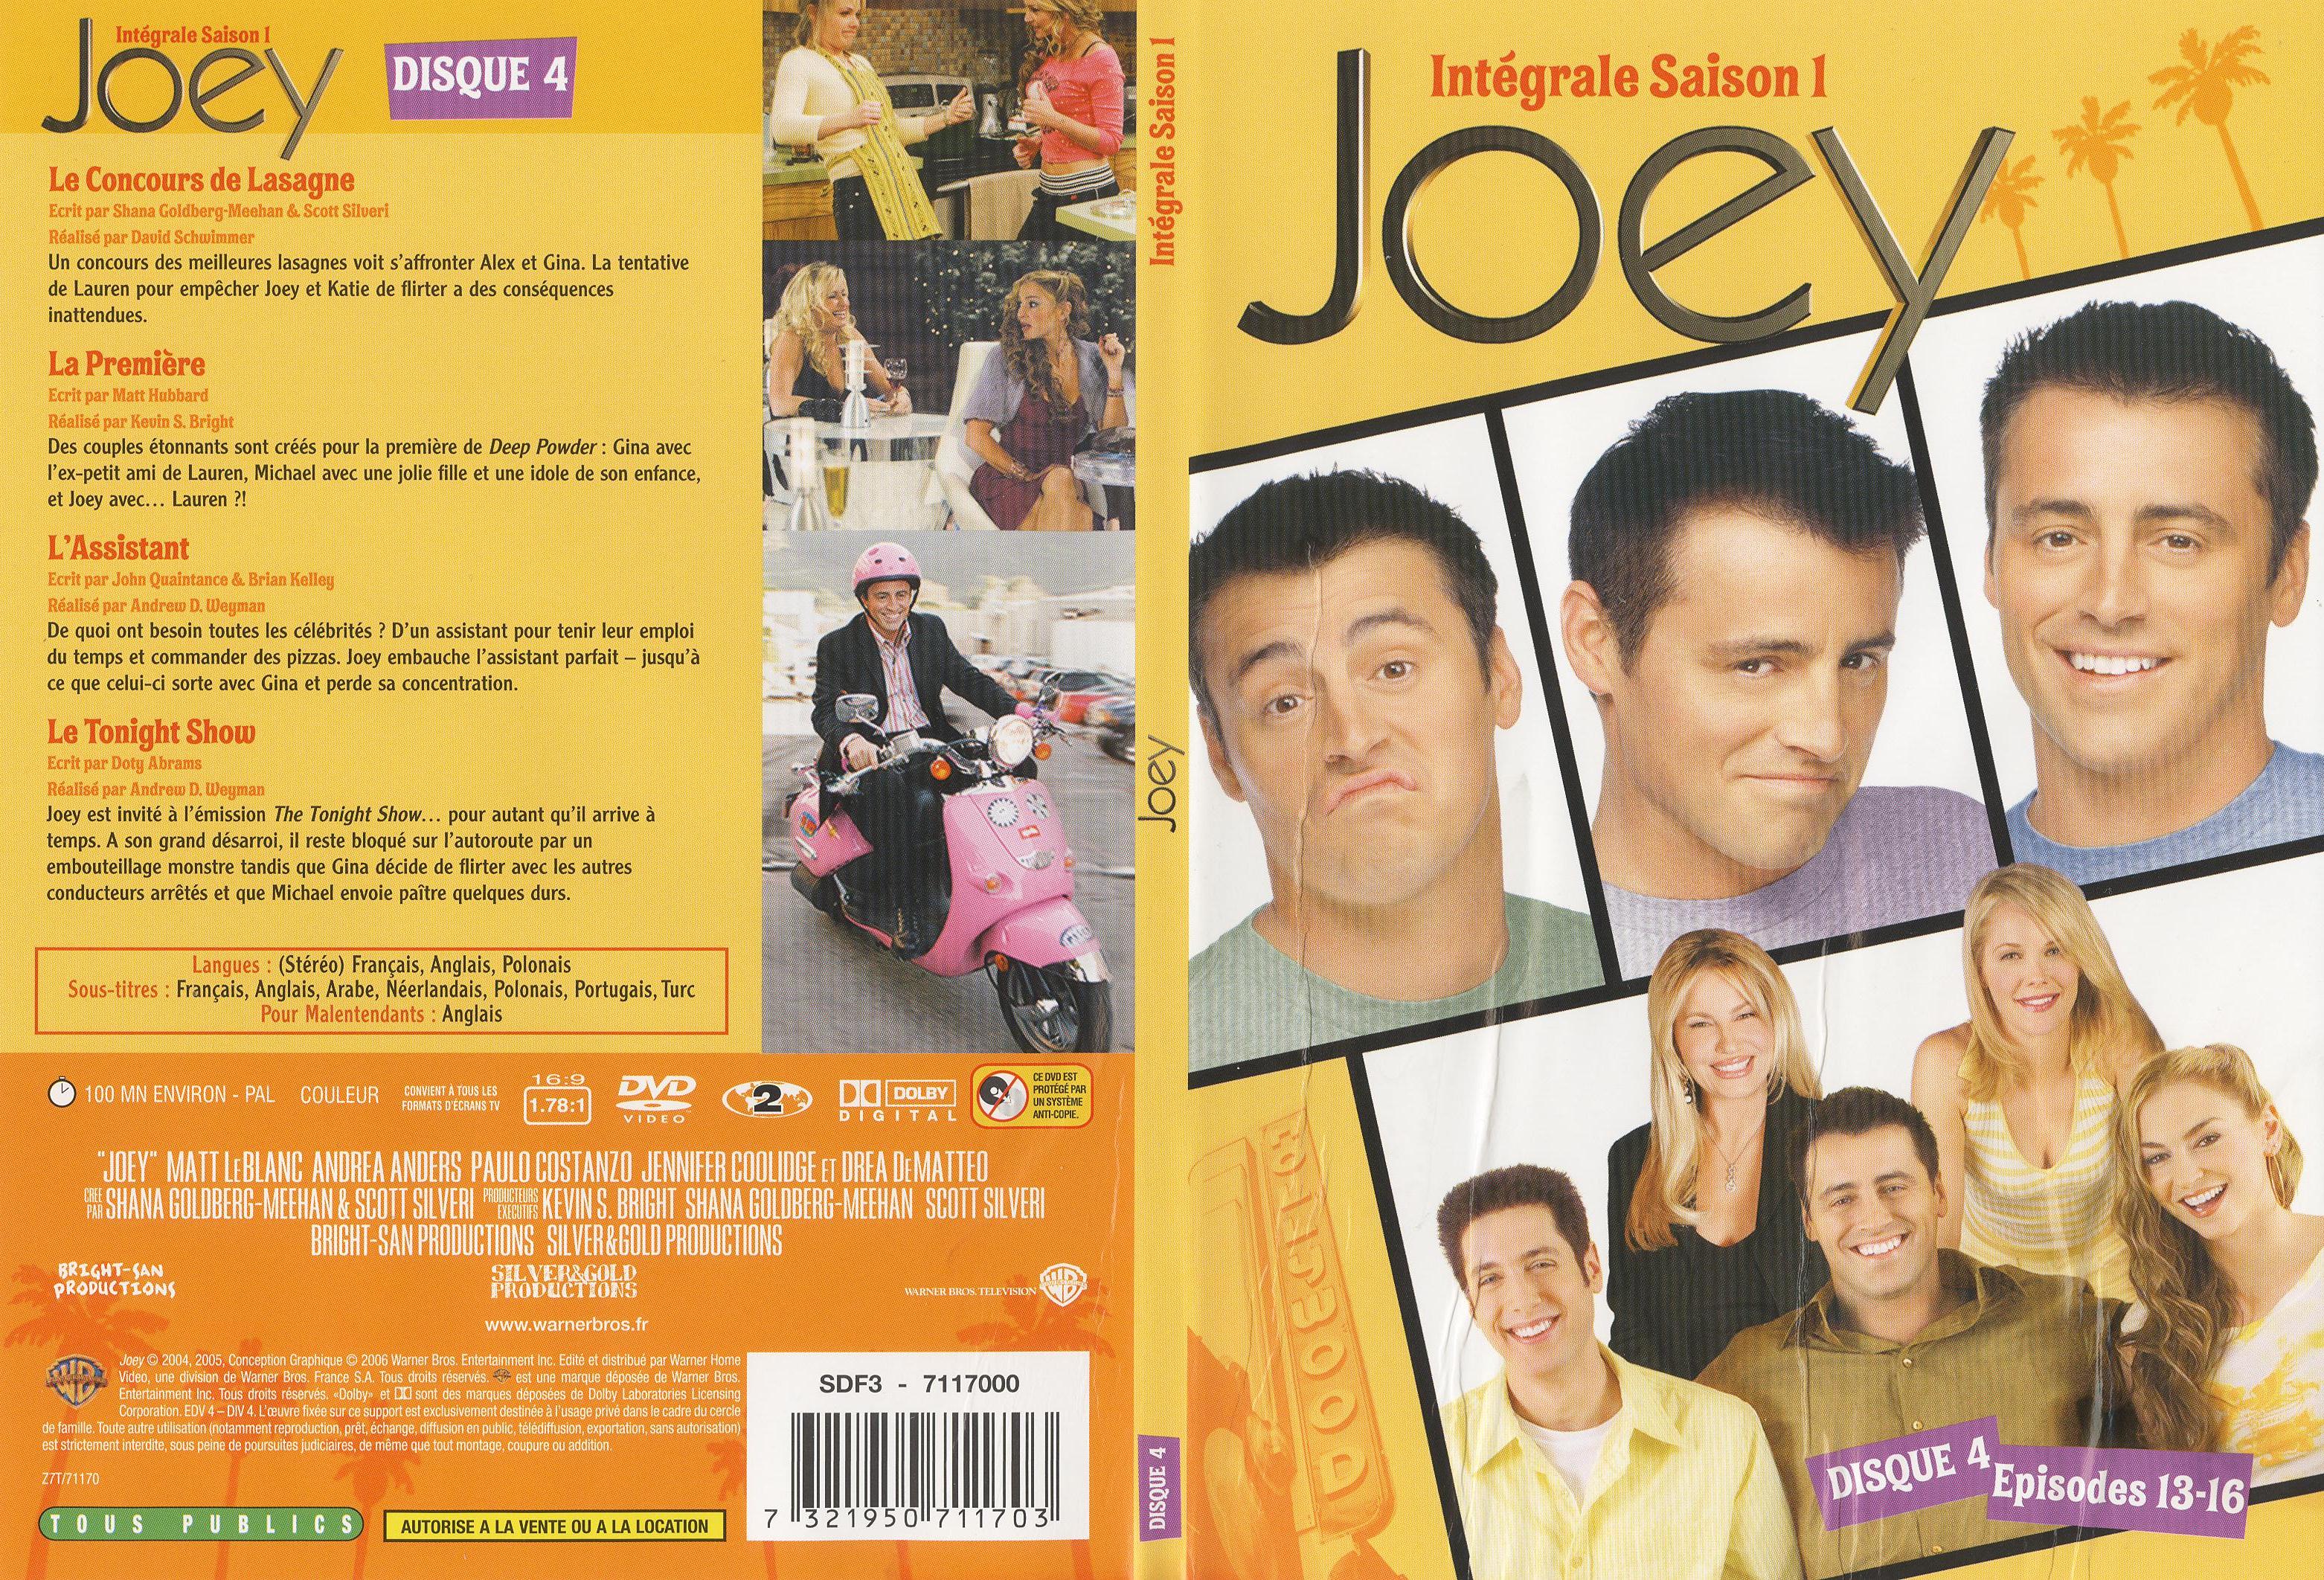 Jaquette DVD Joey Saison 1 DVD 4